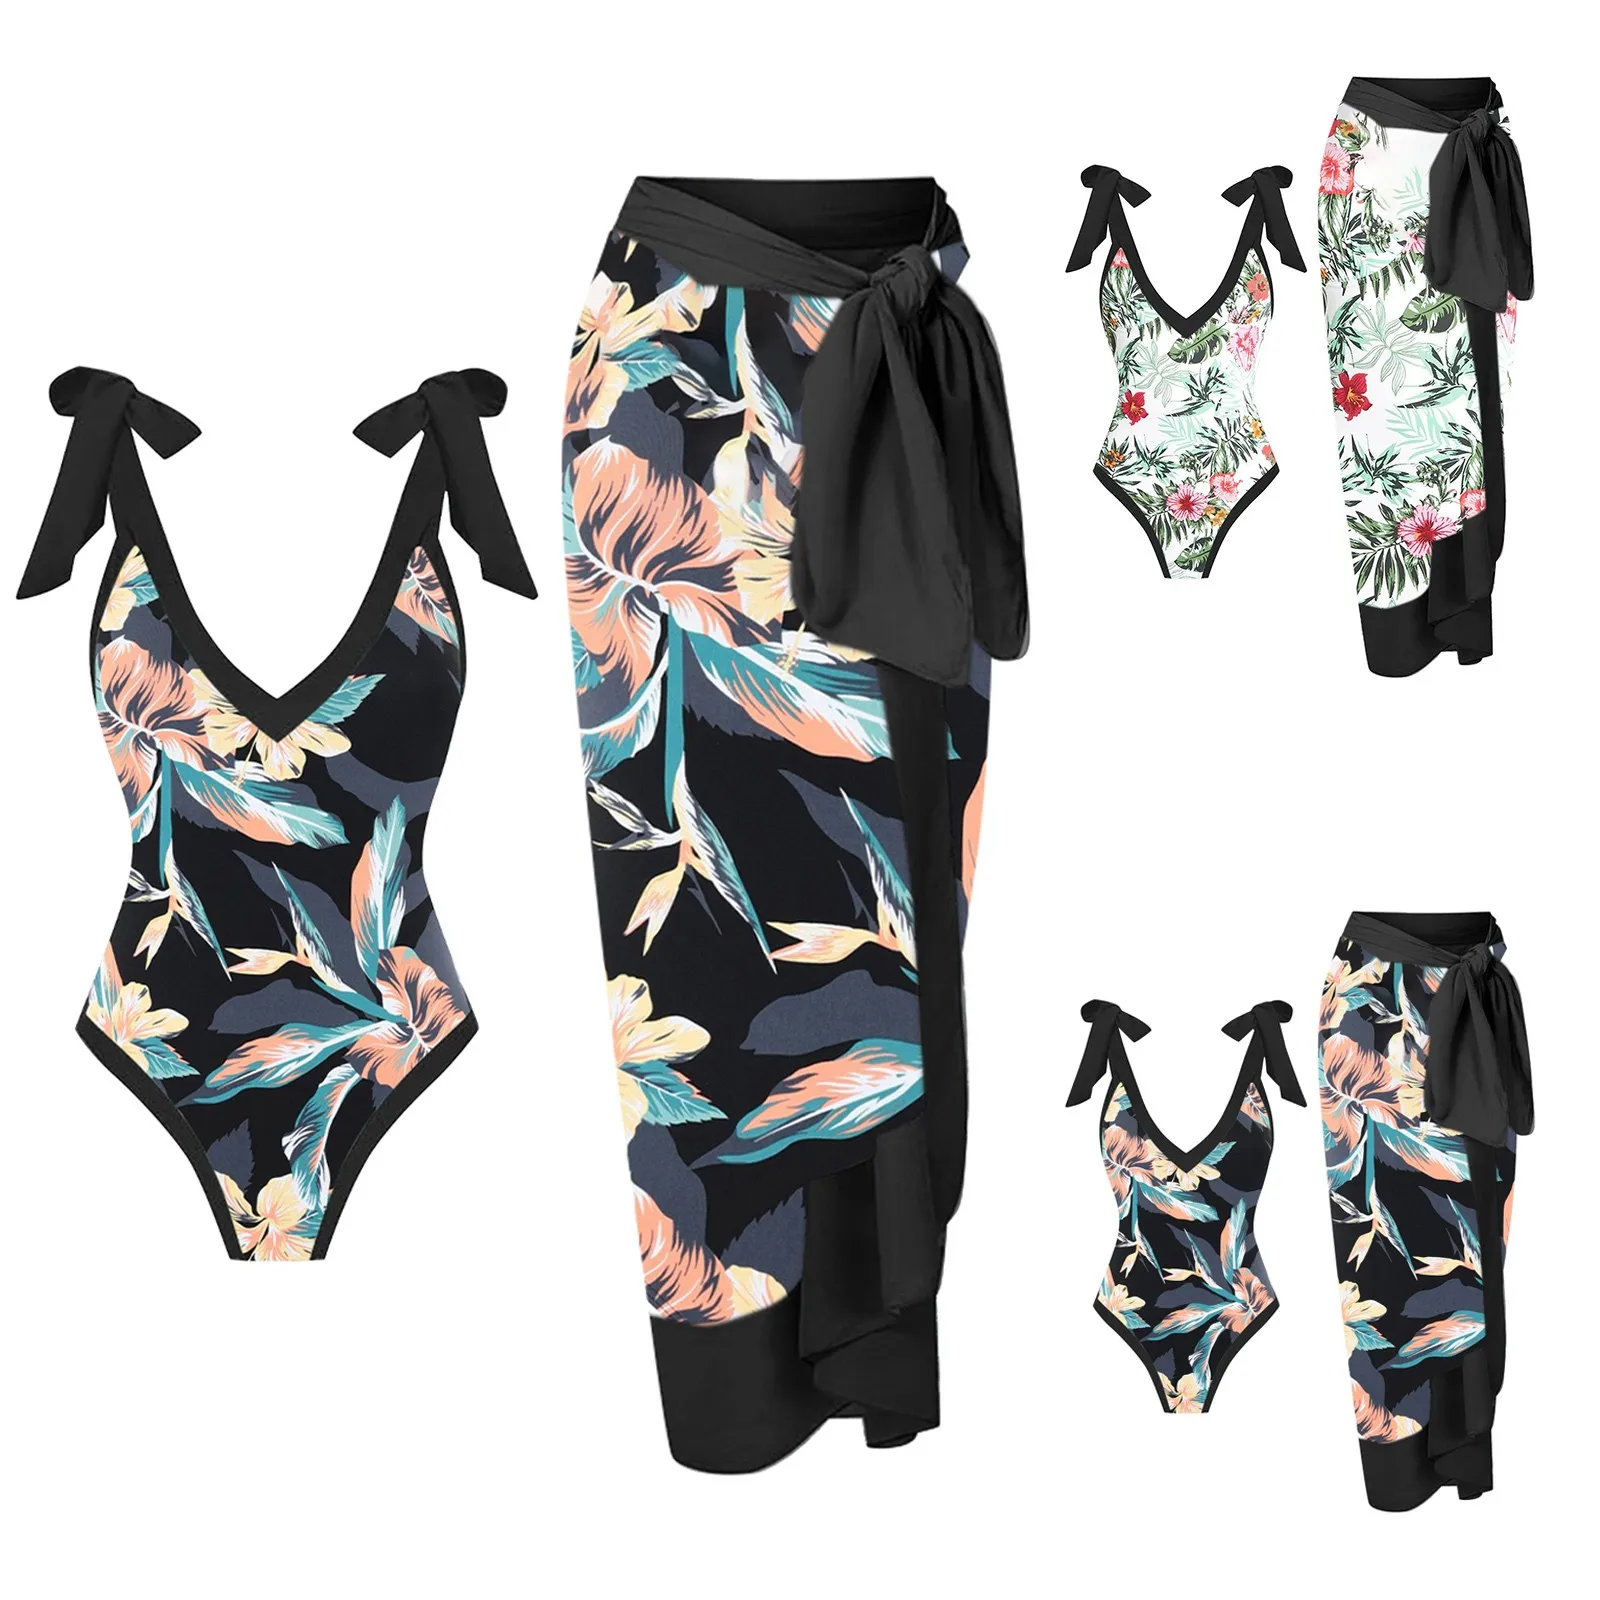 

Женское бикини с завышенной талией, Сексуальные Купальники пуш-ап из двух частей, винтажный купальник, монокини, боди для женщин, пляжная одежда